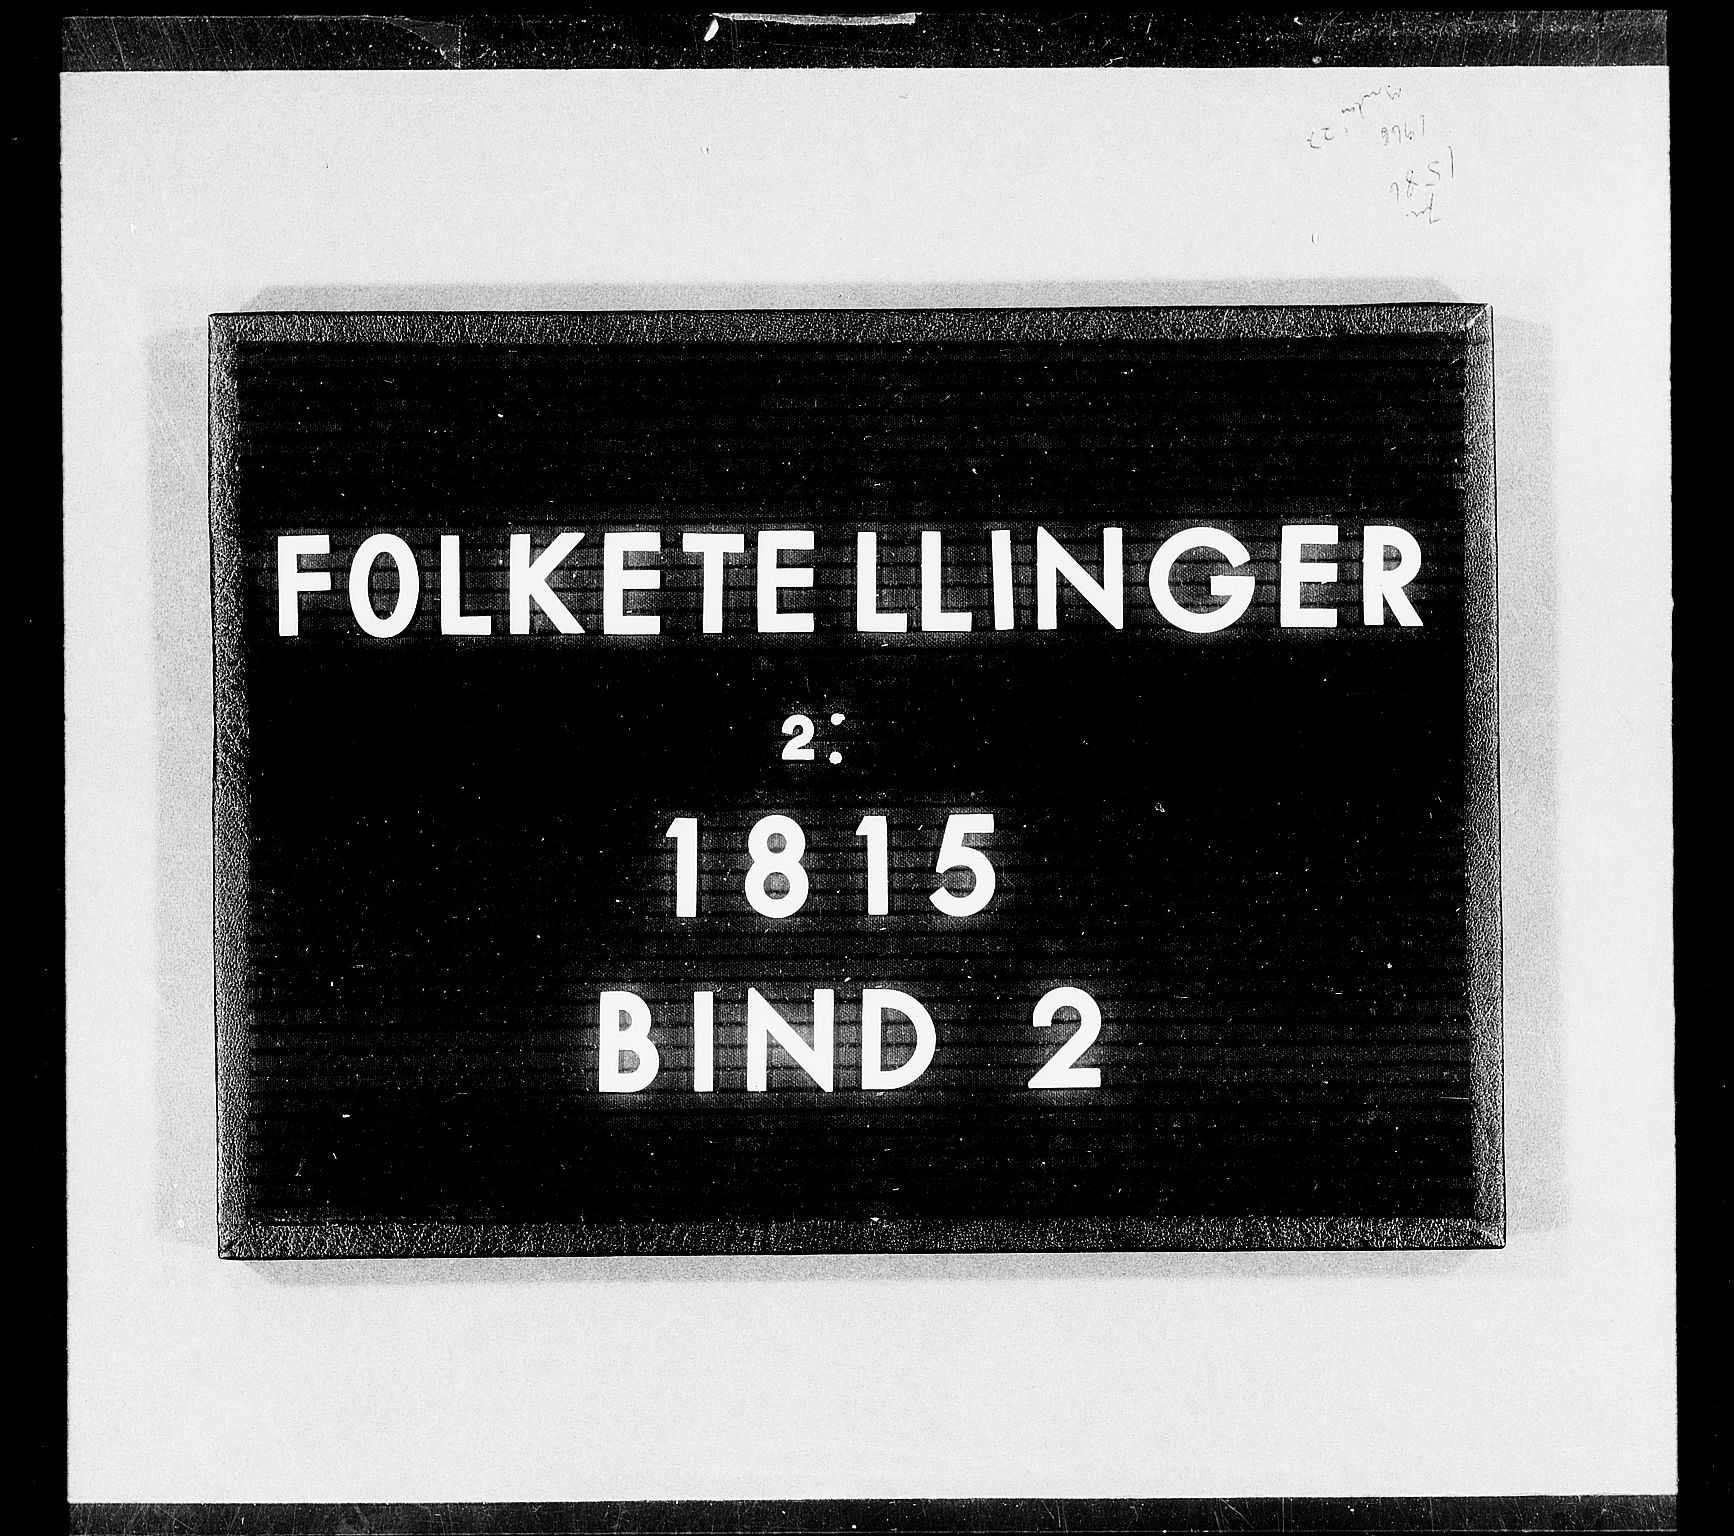 RA, Folketellingen 1815, bind 2: Bergen stift og Trondheim stift, 1815, s. 1